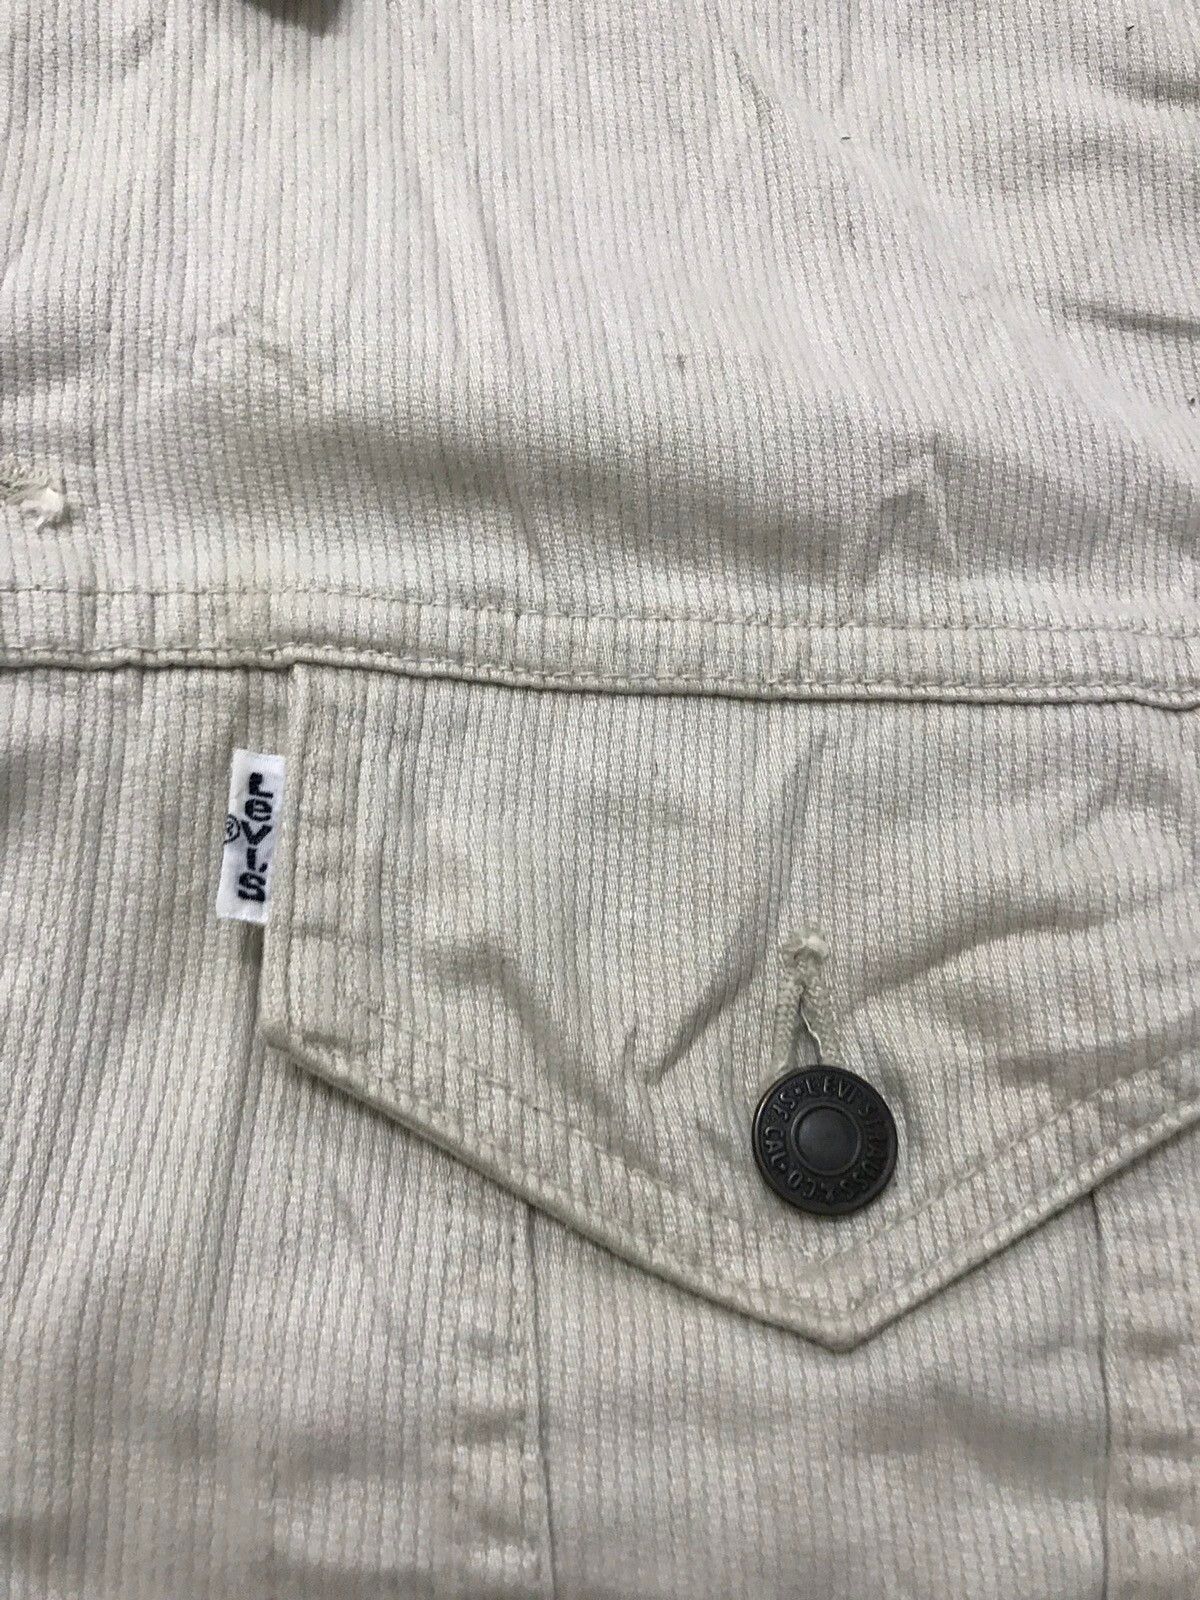 Vintage Levis Denim Jacket - 5